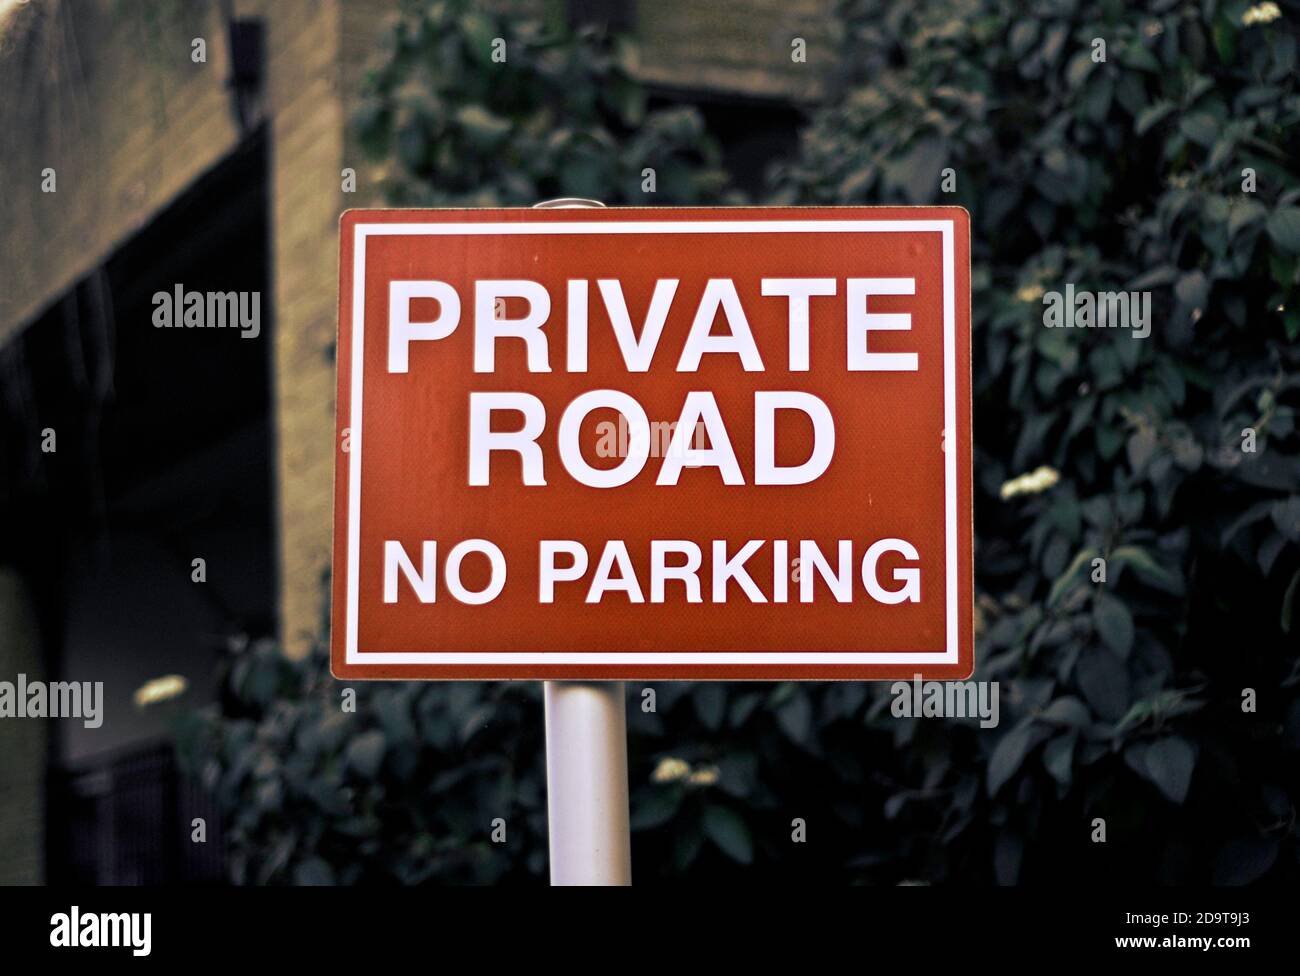 Private Straße, kein Parkschild. Nicht zulässig. Keine Durchgangsstraße. Klares rot-weißes Schild. Stockfoto